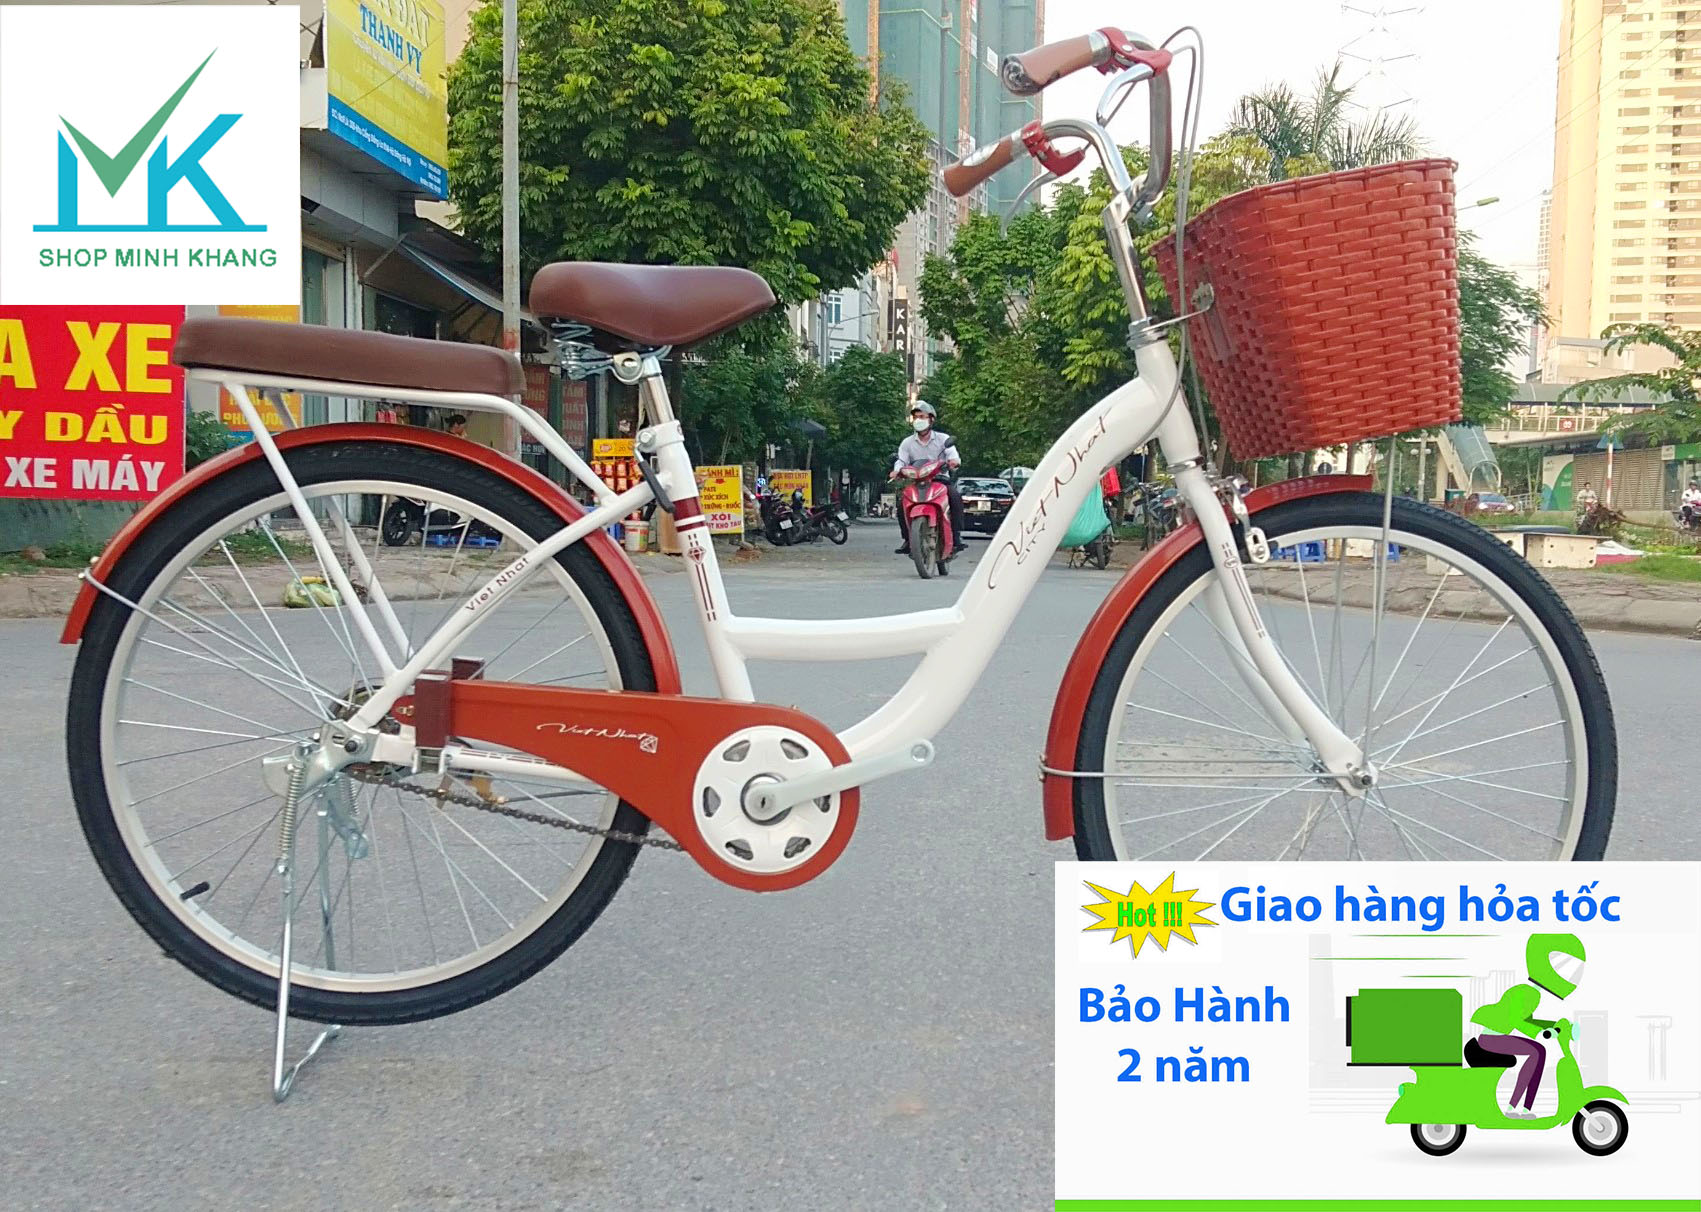 Sở hữu một chiếc xe đạp mini Nhật cũ tại Hà Nội thật tiện lợi và thú vị. Với thiết kế nhỏ gọn và đa dạng màu sắc, chiếc xe đạp mini sẽ làm bạn trở nên năng động và trẻ trung hơn. Đặc biệt, các mẫu xe đạp mini Nhật được đảm bảo chất lượng và giá cả phải chăng.